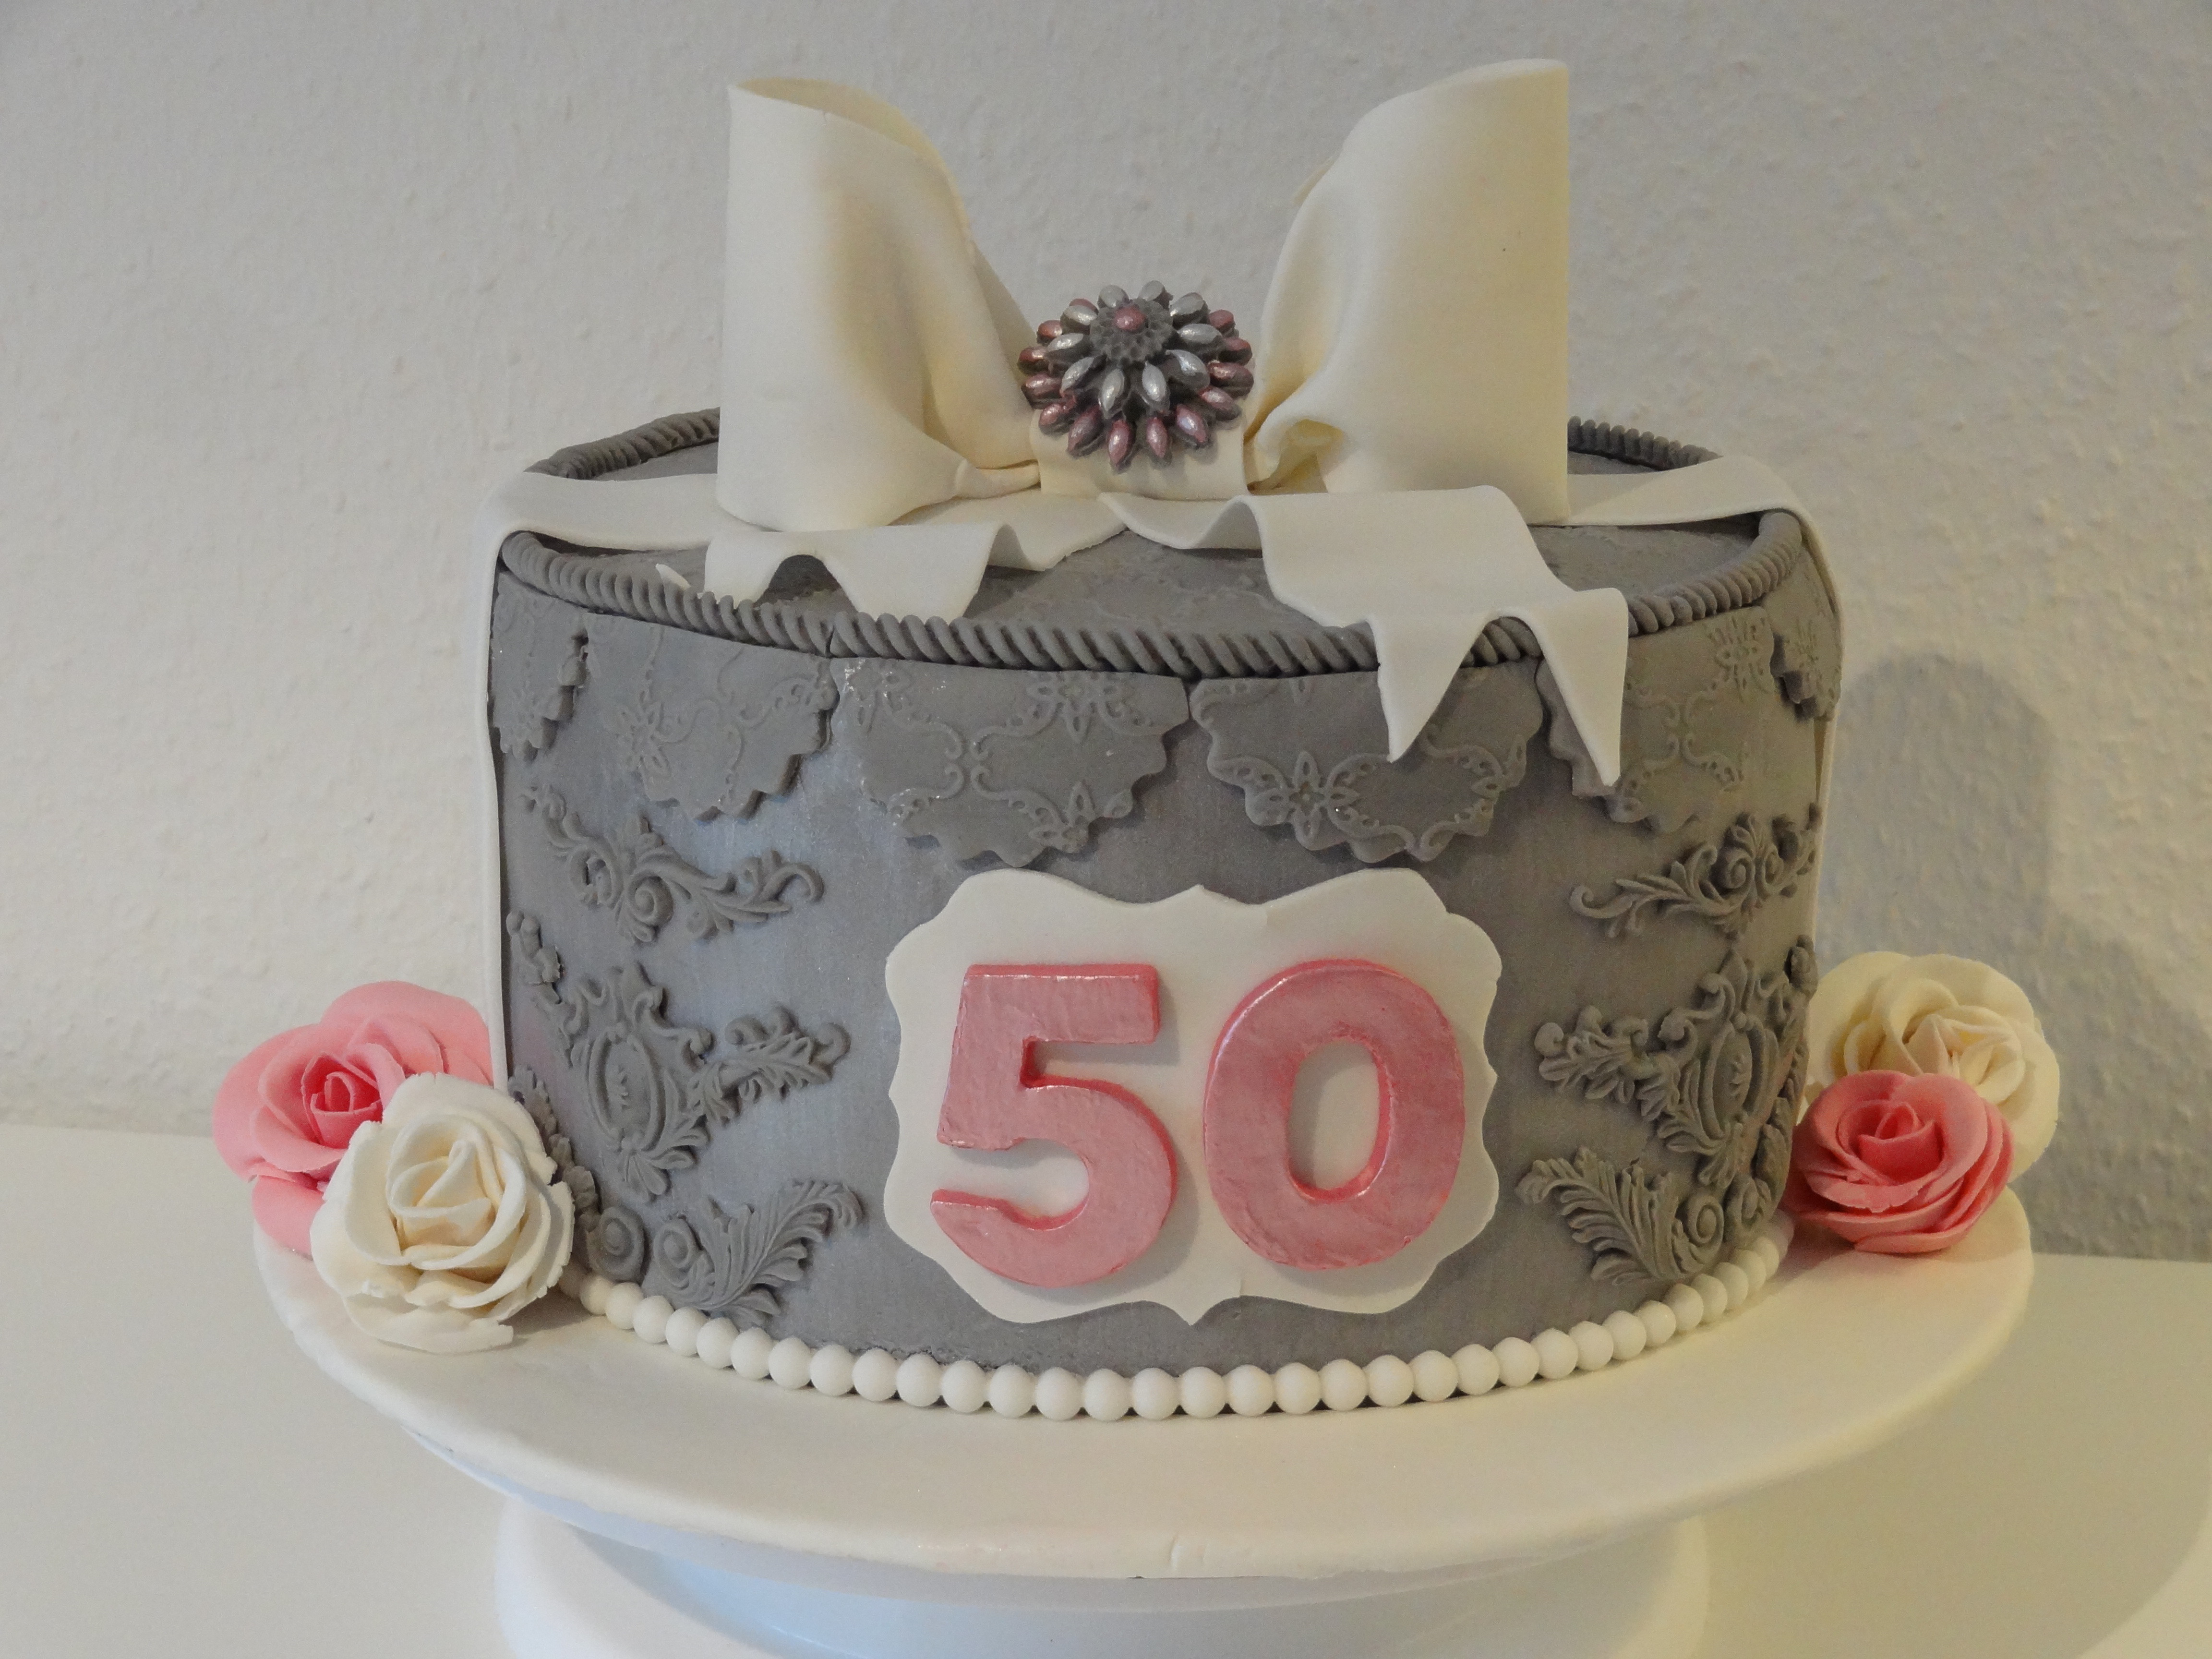 Geburtstagstorte 50 Jahre
 Geburtstagstorte